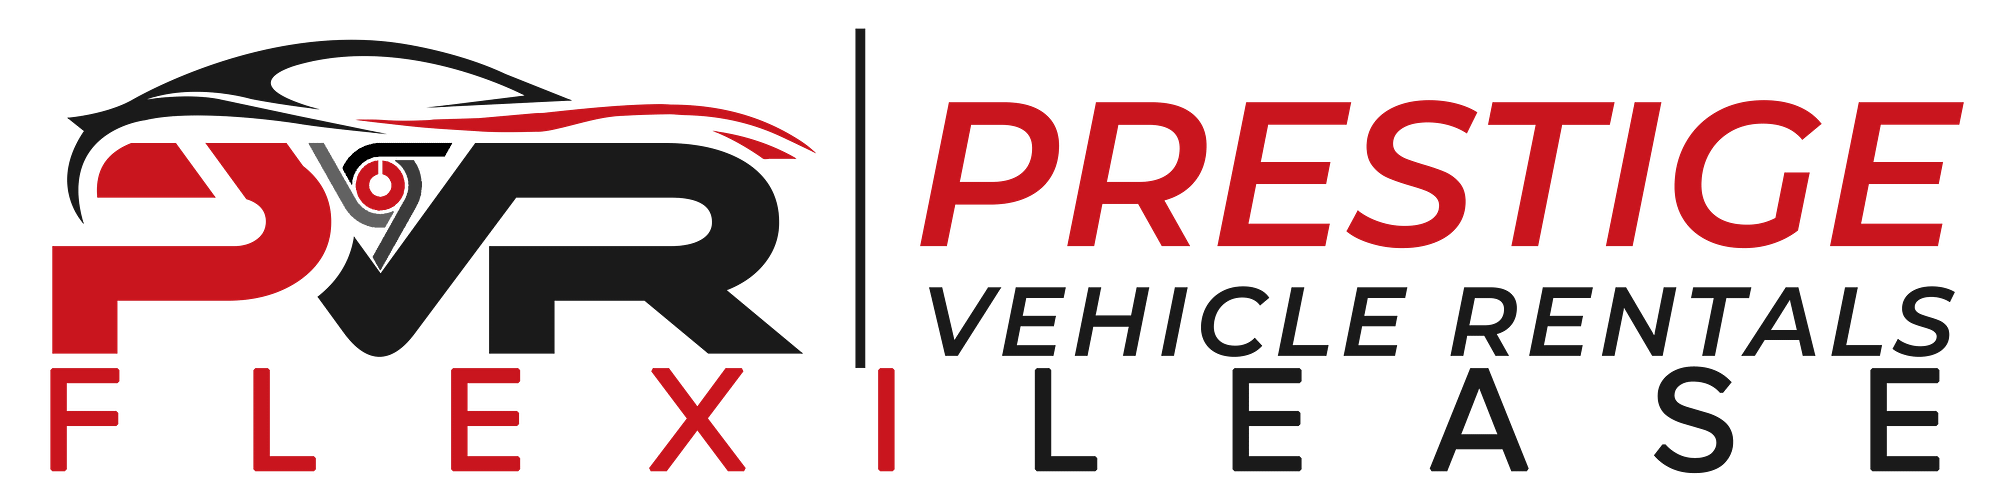 Prestige Vehicle Rentals